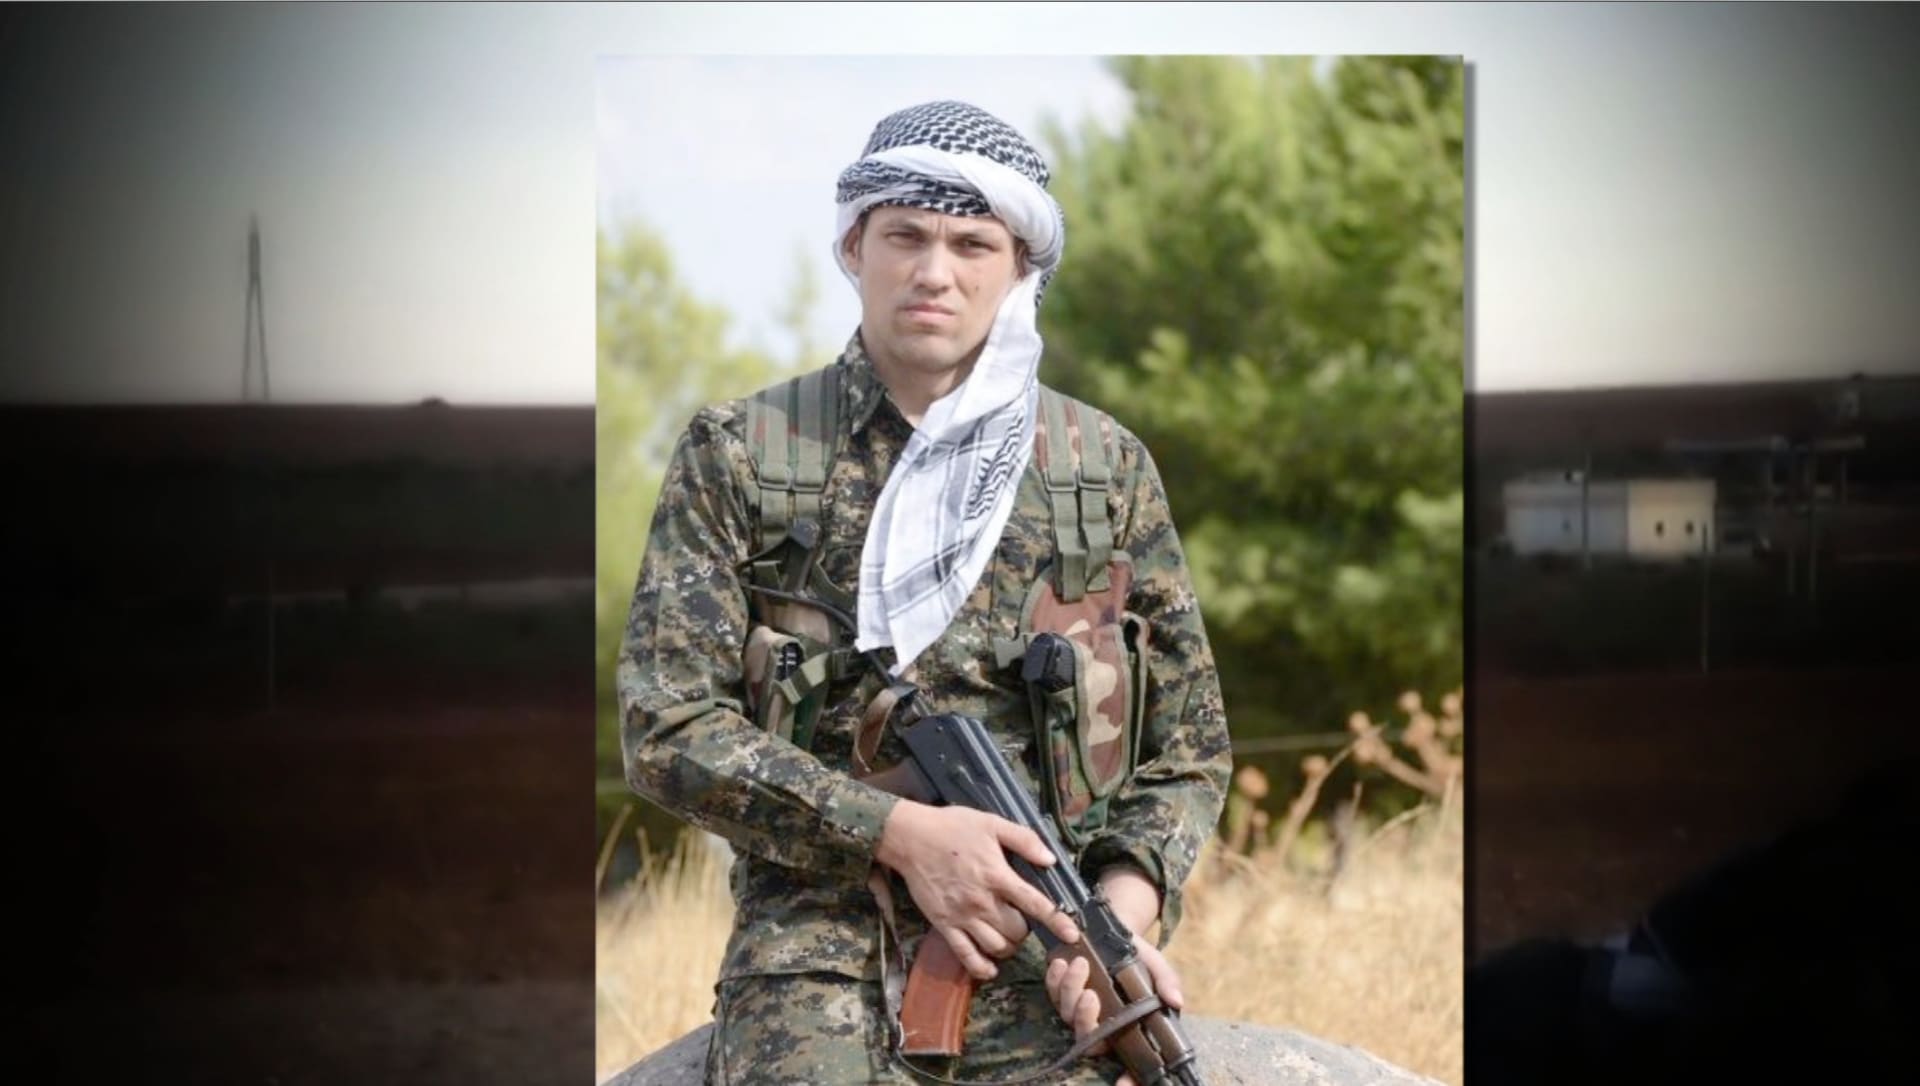 حصري: 3 أمريكيين يقاتلون إلى جانب الأكراد ضد داعش بسوريا.. من هو جوردان ماتسون ومن "الجيش الخاص" الذي وظفه؟